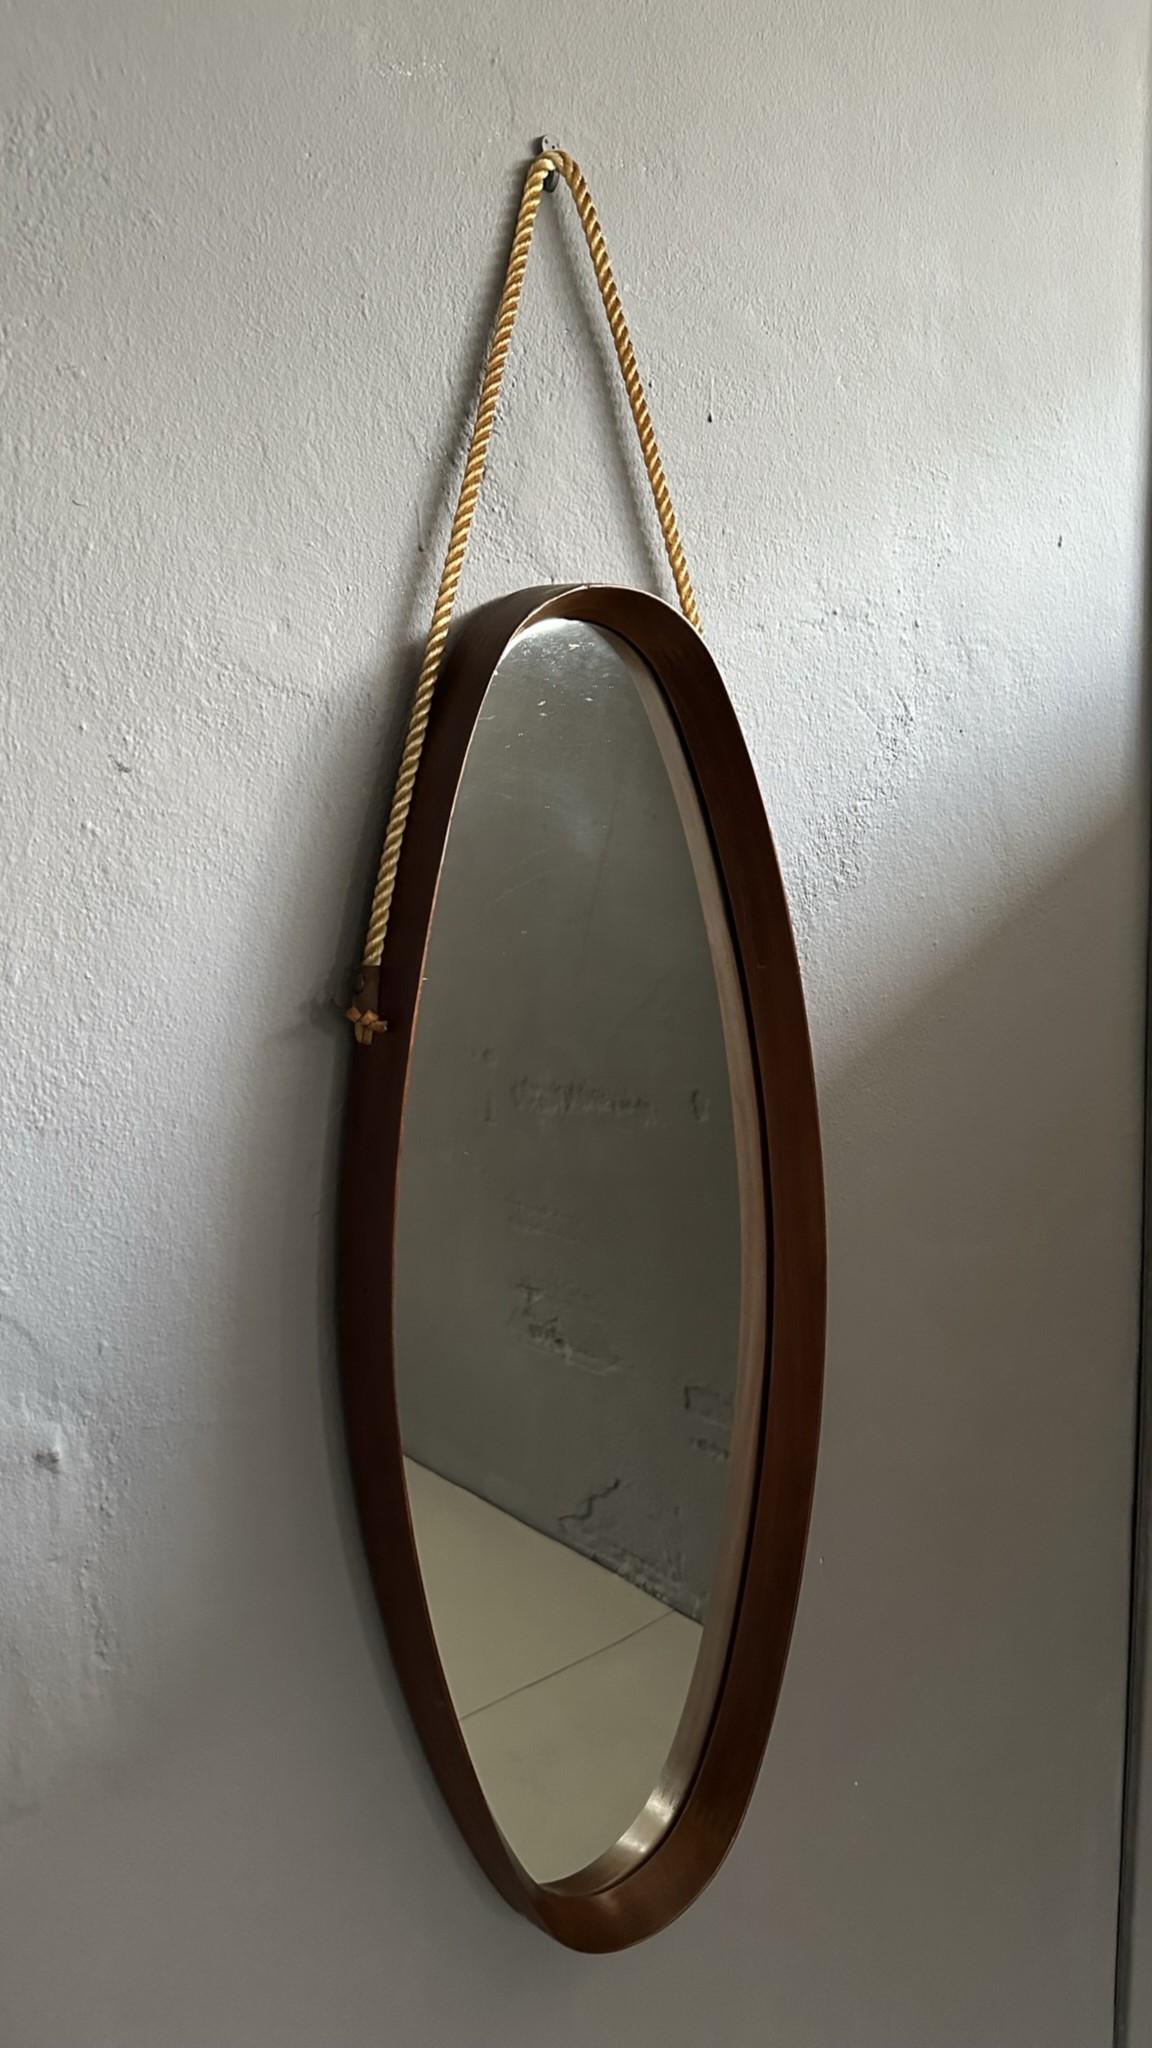 
Miroir ovale vintage, avec cadre en teck des années 1960, fabrication italienne.
Le miroir est muni d'une corde pour le suspendre au mur.